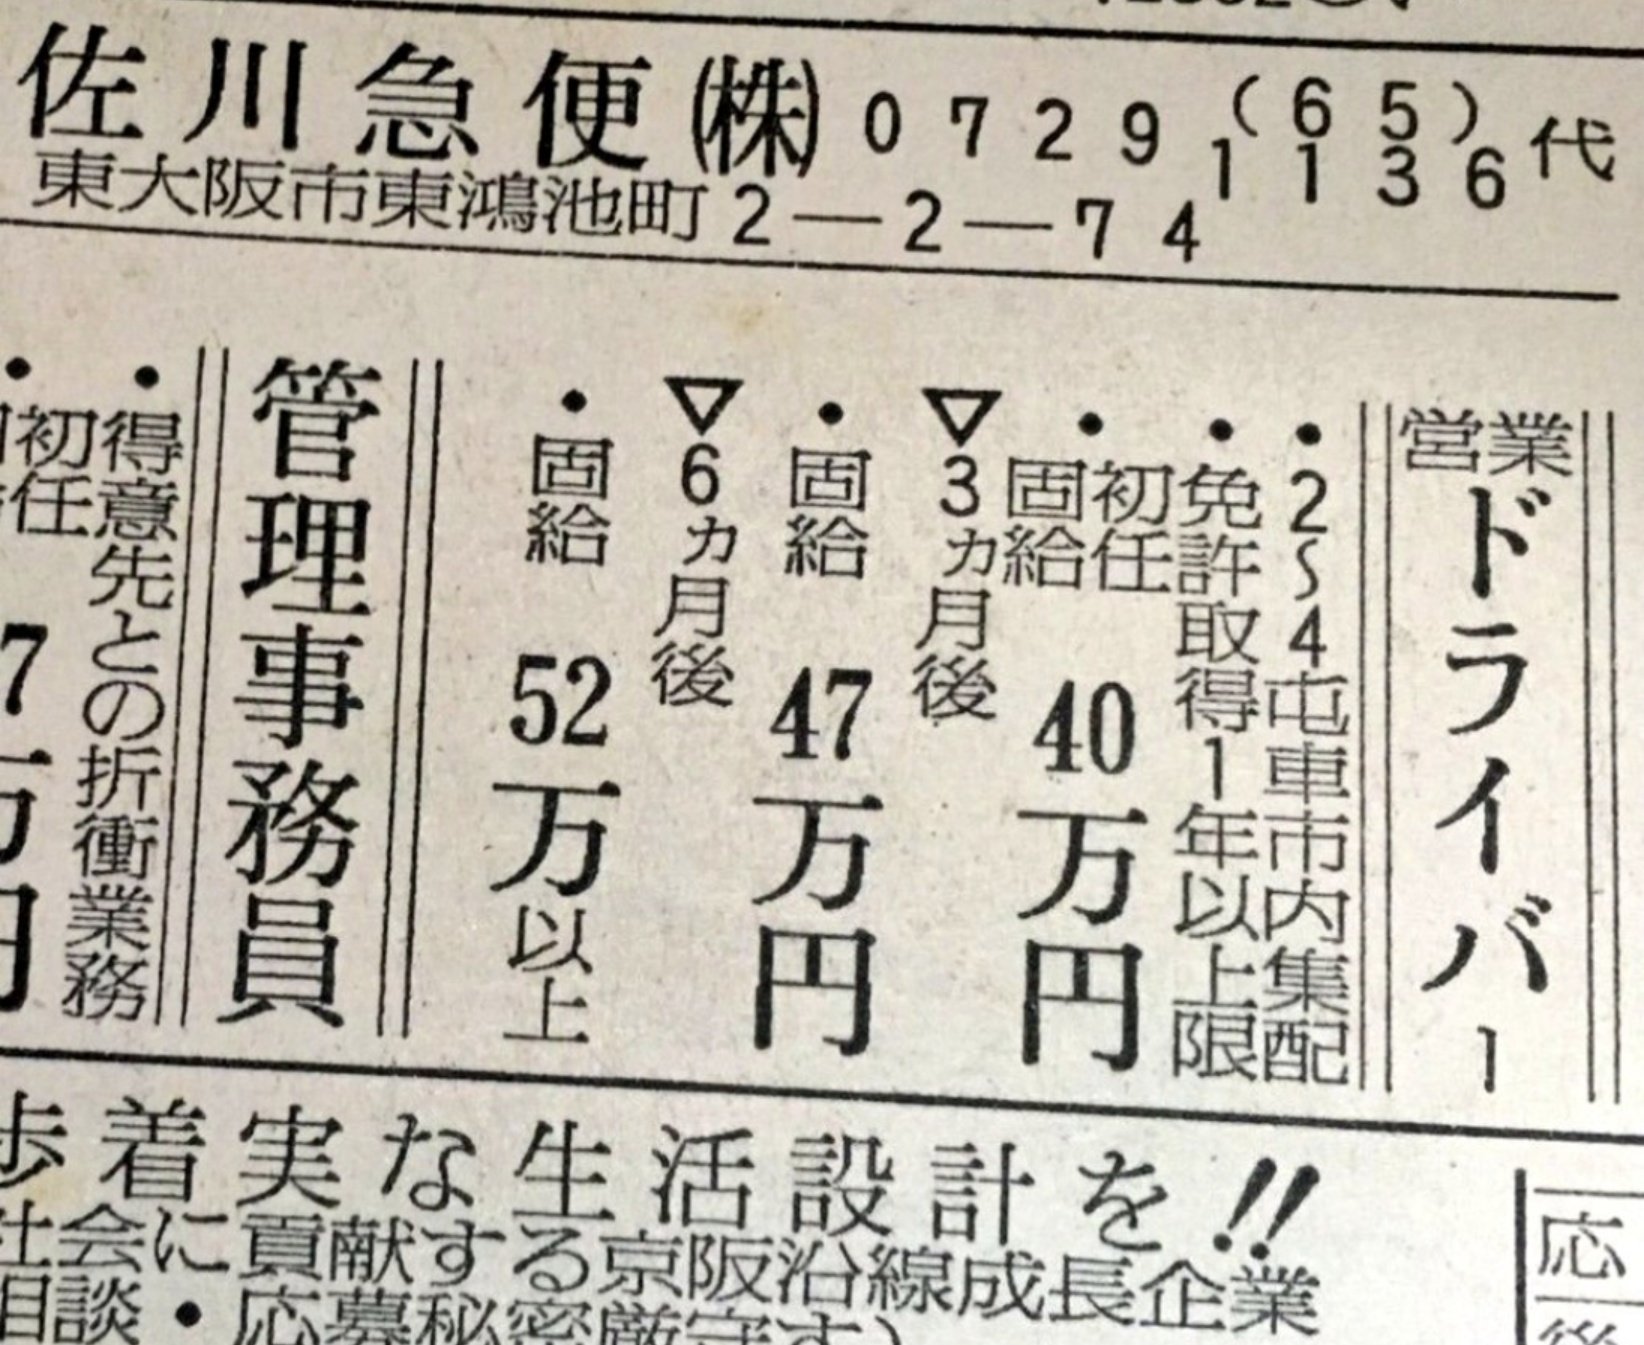 33年前→｢佐川急便ドライバー、月収52万円｣。安倍岸田晋三。  [153490809]\n_1